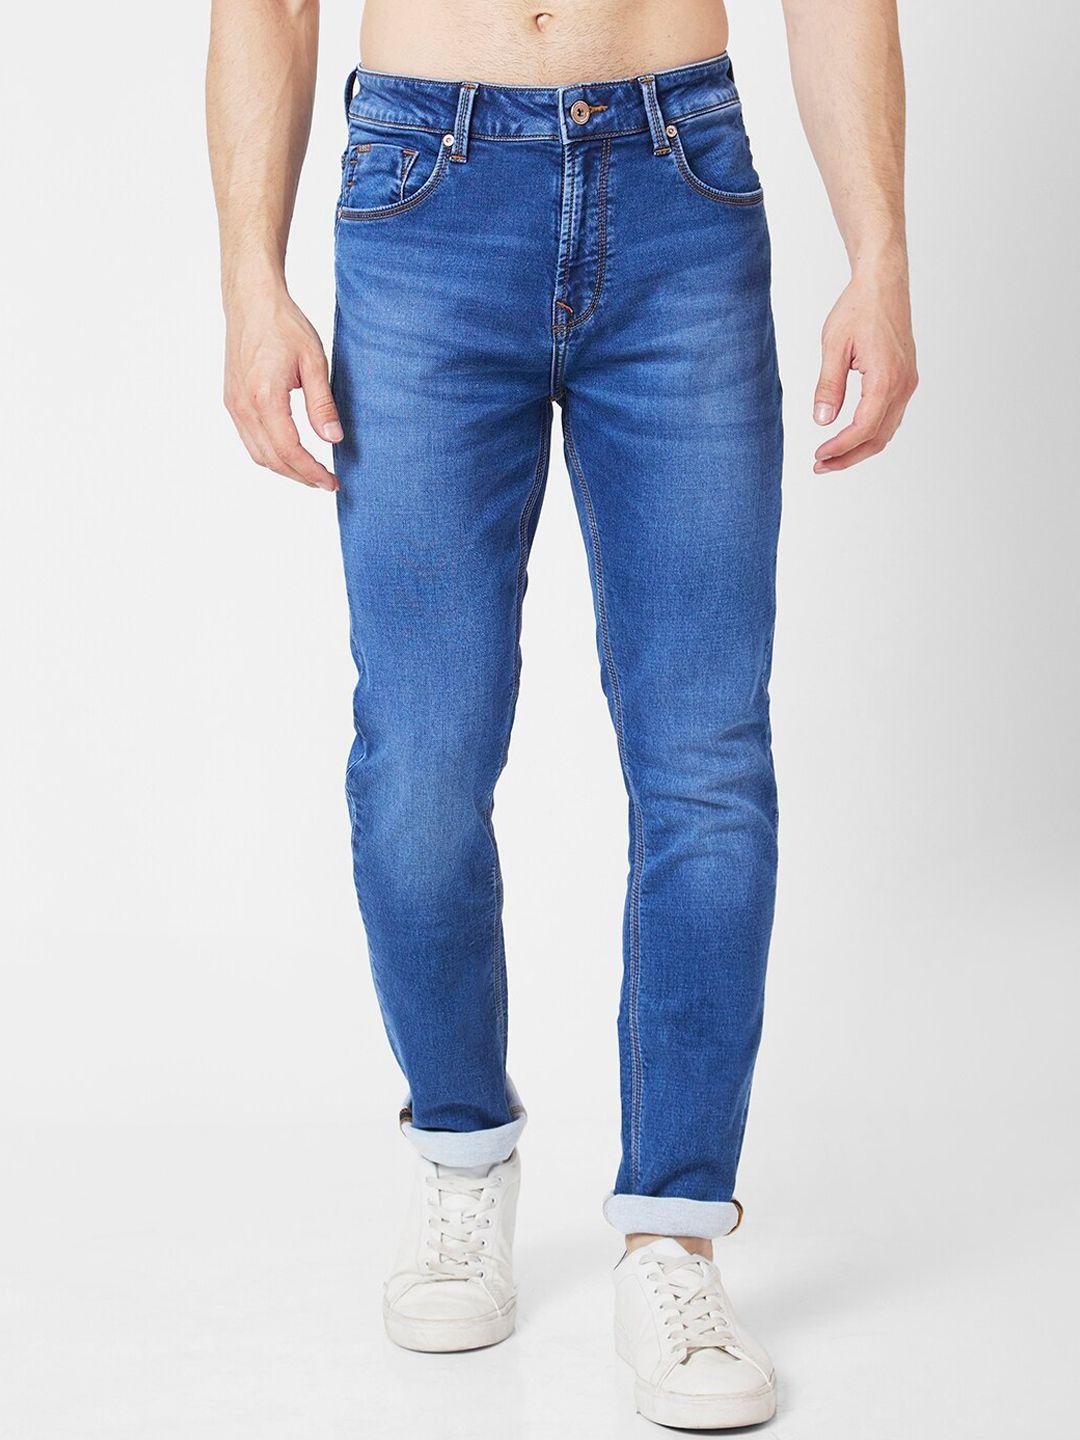 spykar men stretchable cotton jeans